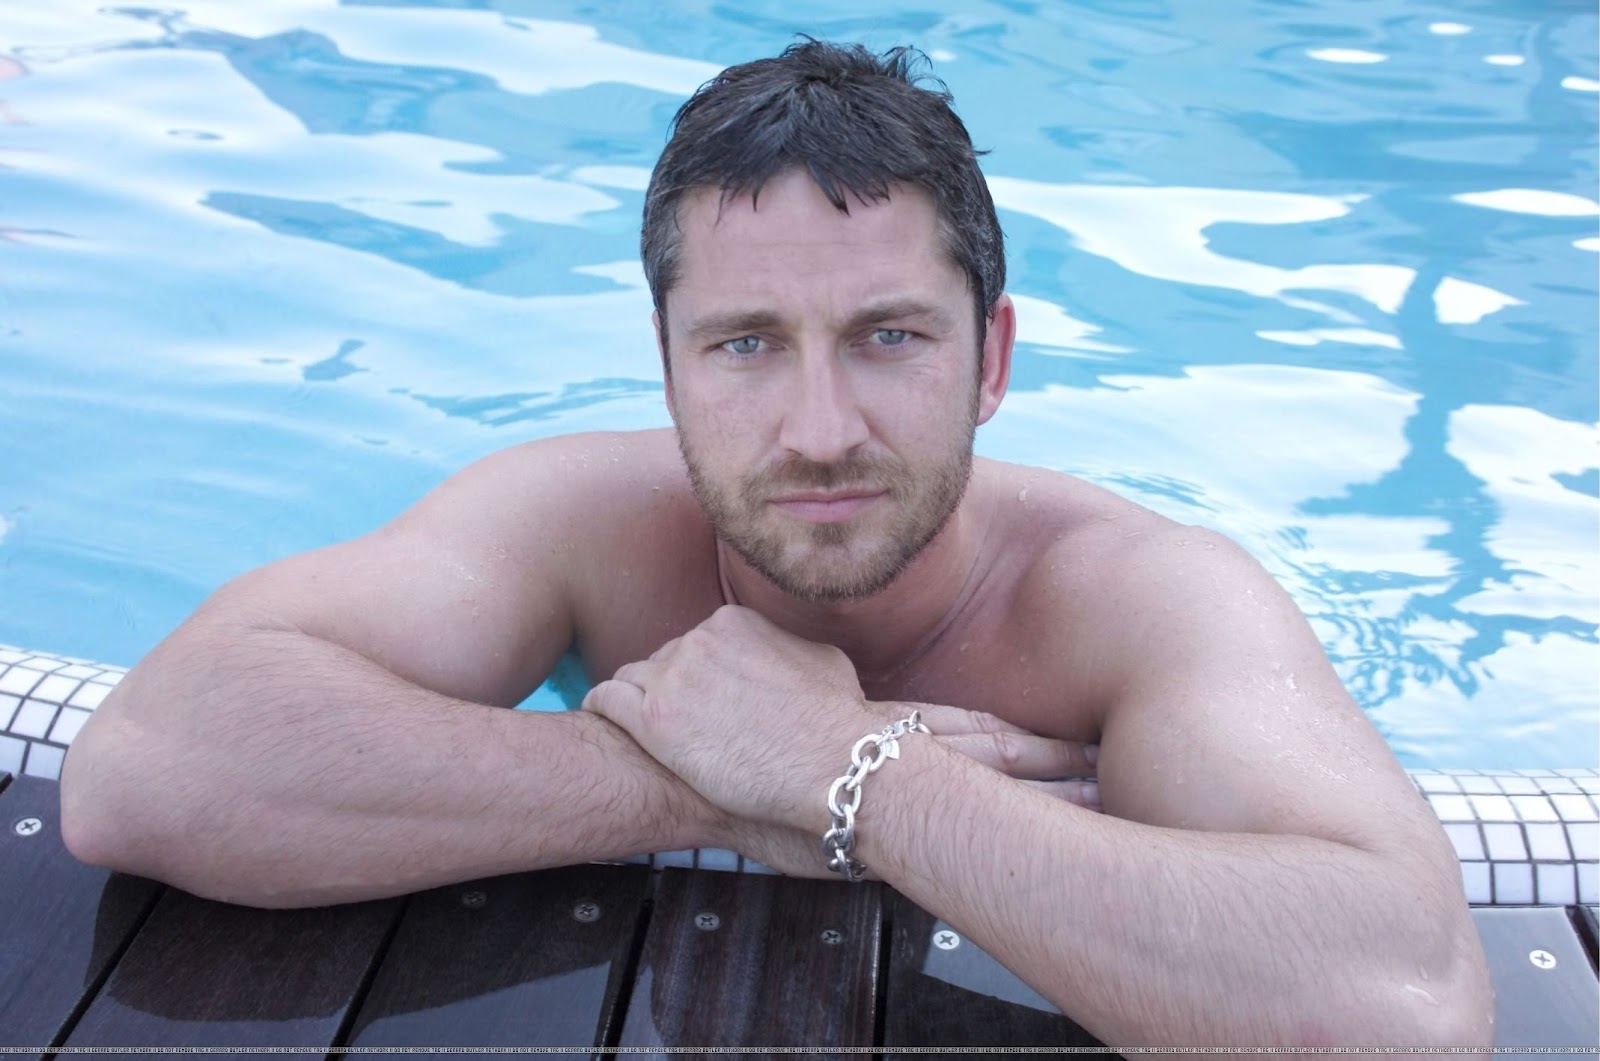 Фото мужчины 30 лет в бассейне